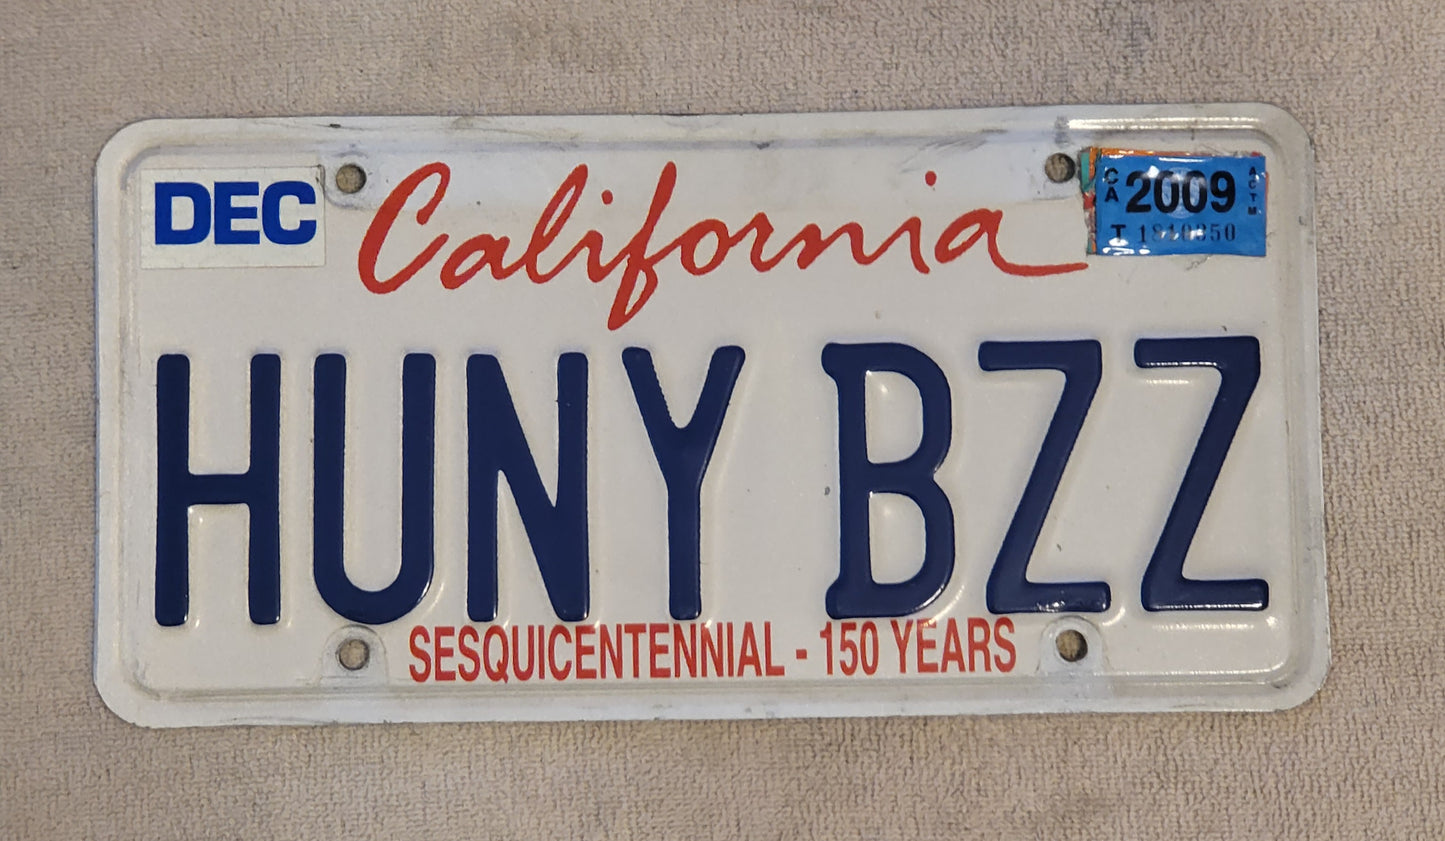 2009 California Sesquicentennial 150 Years Vanity License Plate # HUNYBZZ Single